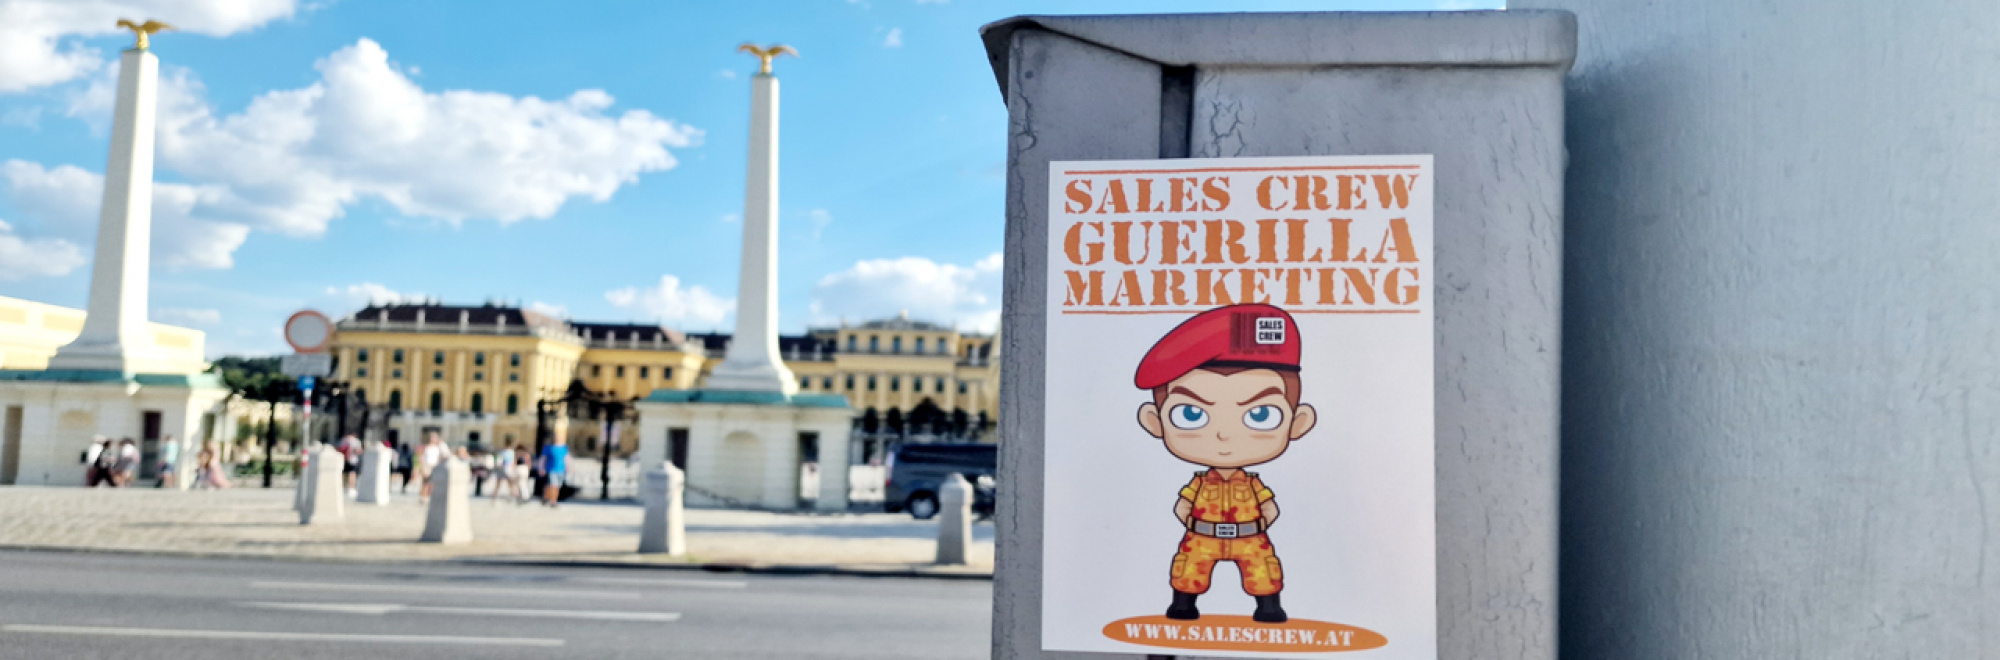 Guerilla Marketing Agentur für Ihre Kampagnen | SALES CREW